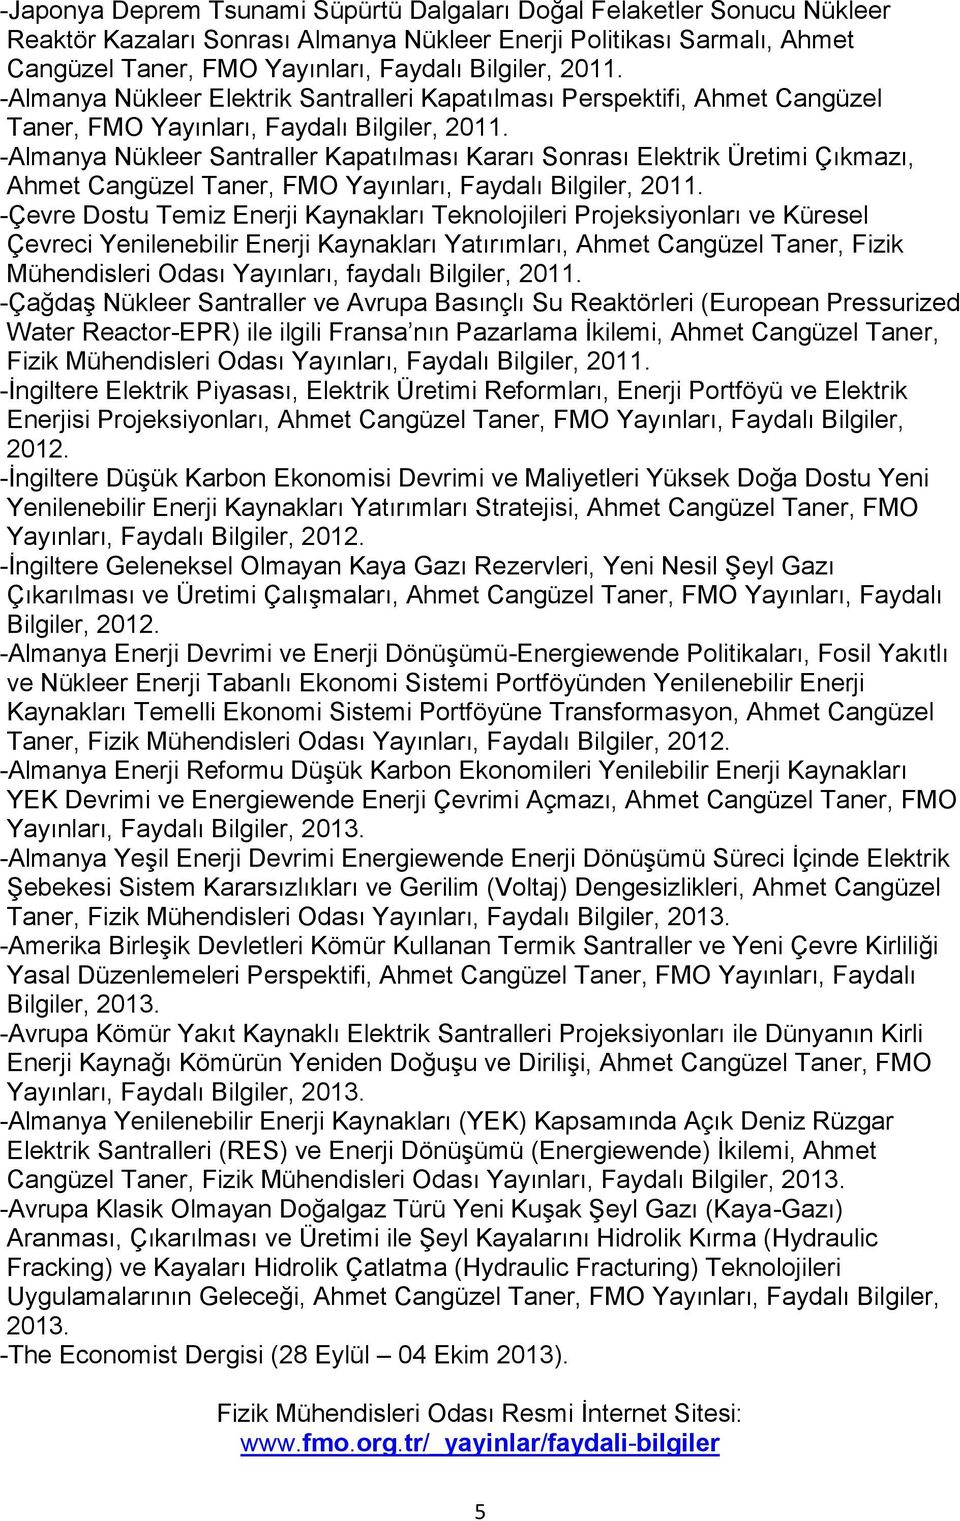 -Almanya Nükleer Santraller Kapatılması Kararı Sonrası Elektrik Üretimi Çıkmazı, Ahmet Cangüzel Taner, FMO Yayınları, Faydalı Bilgiler, 2011.